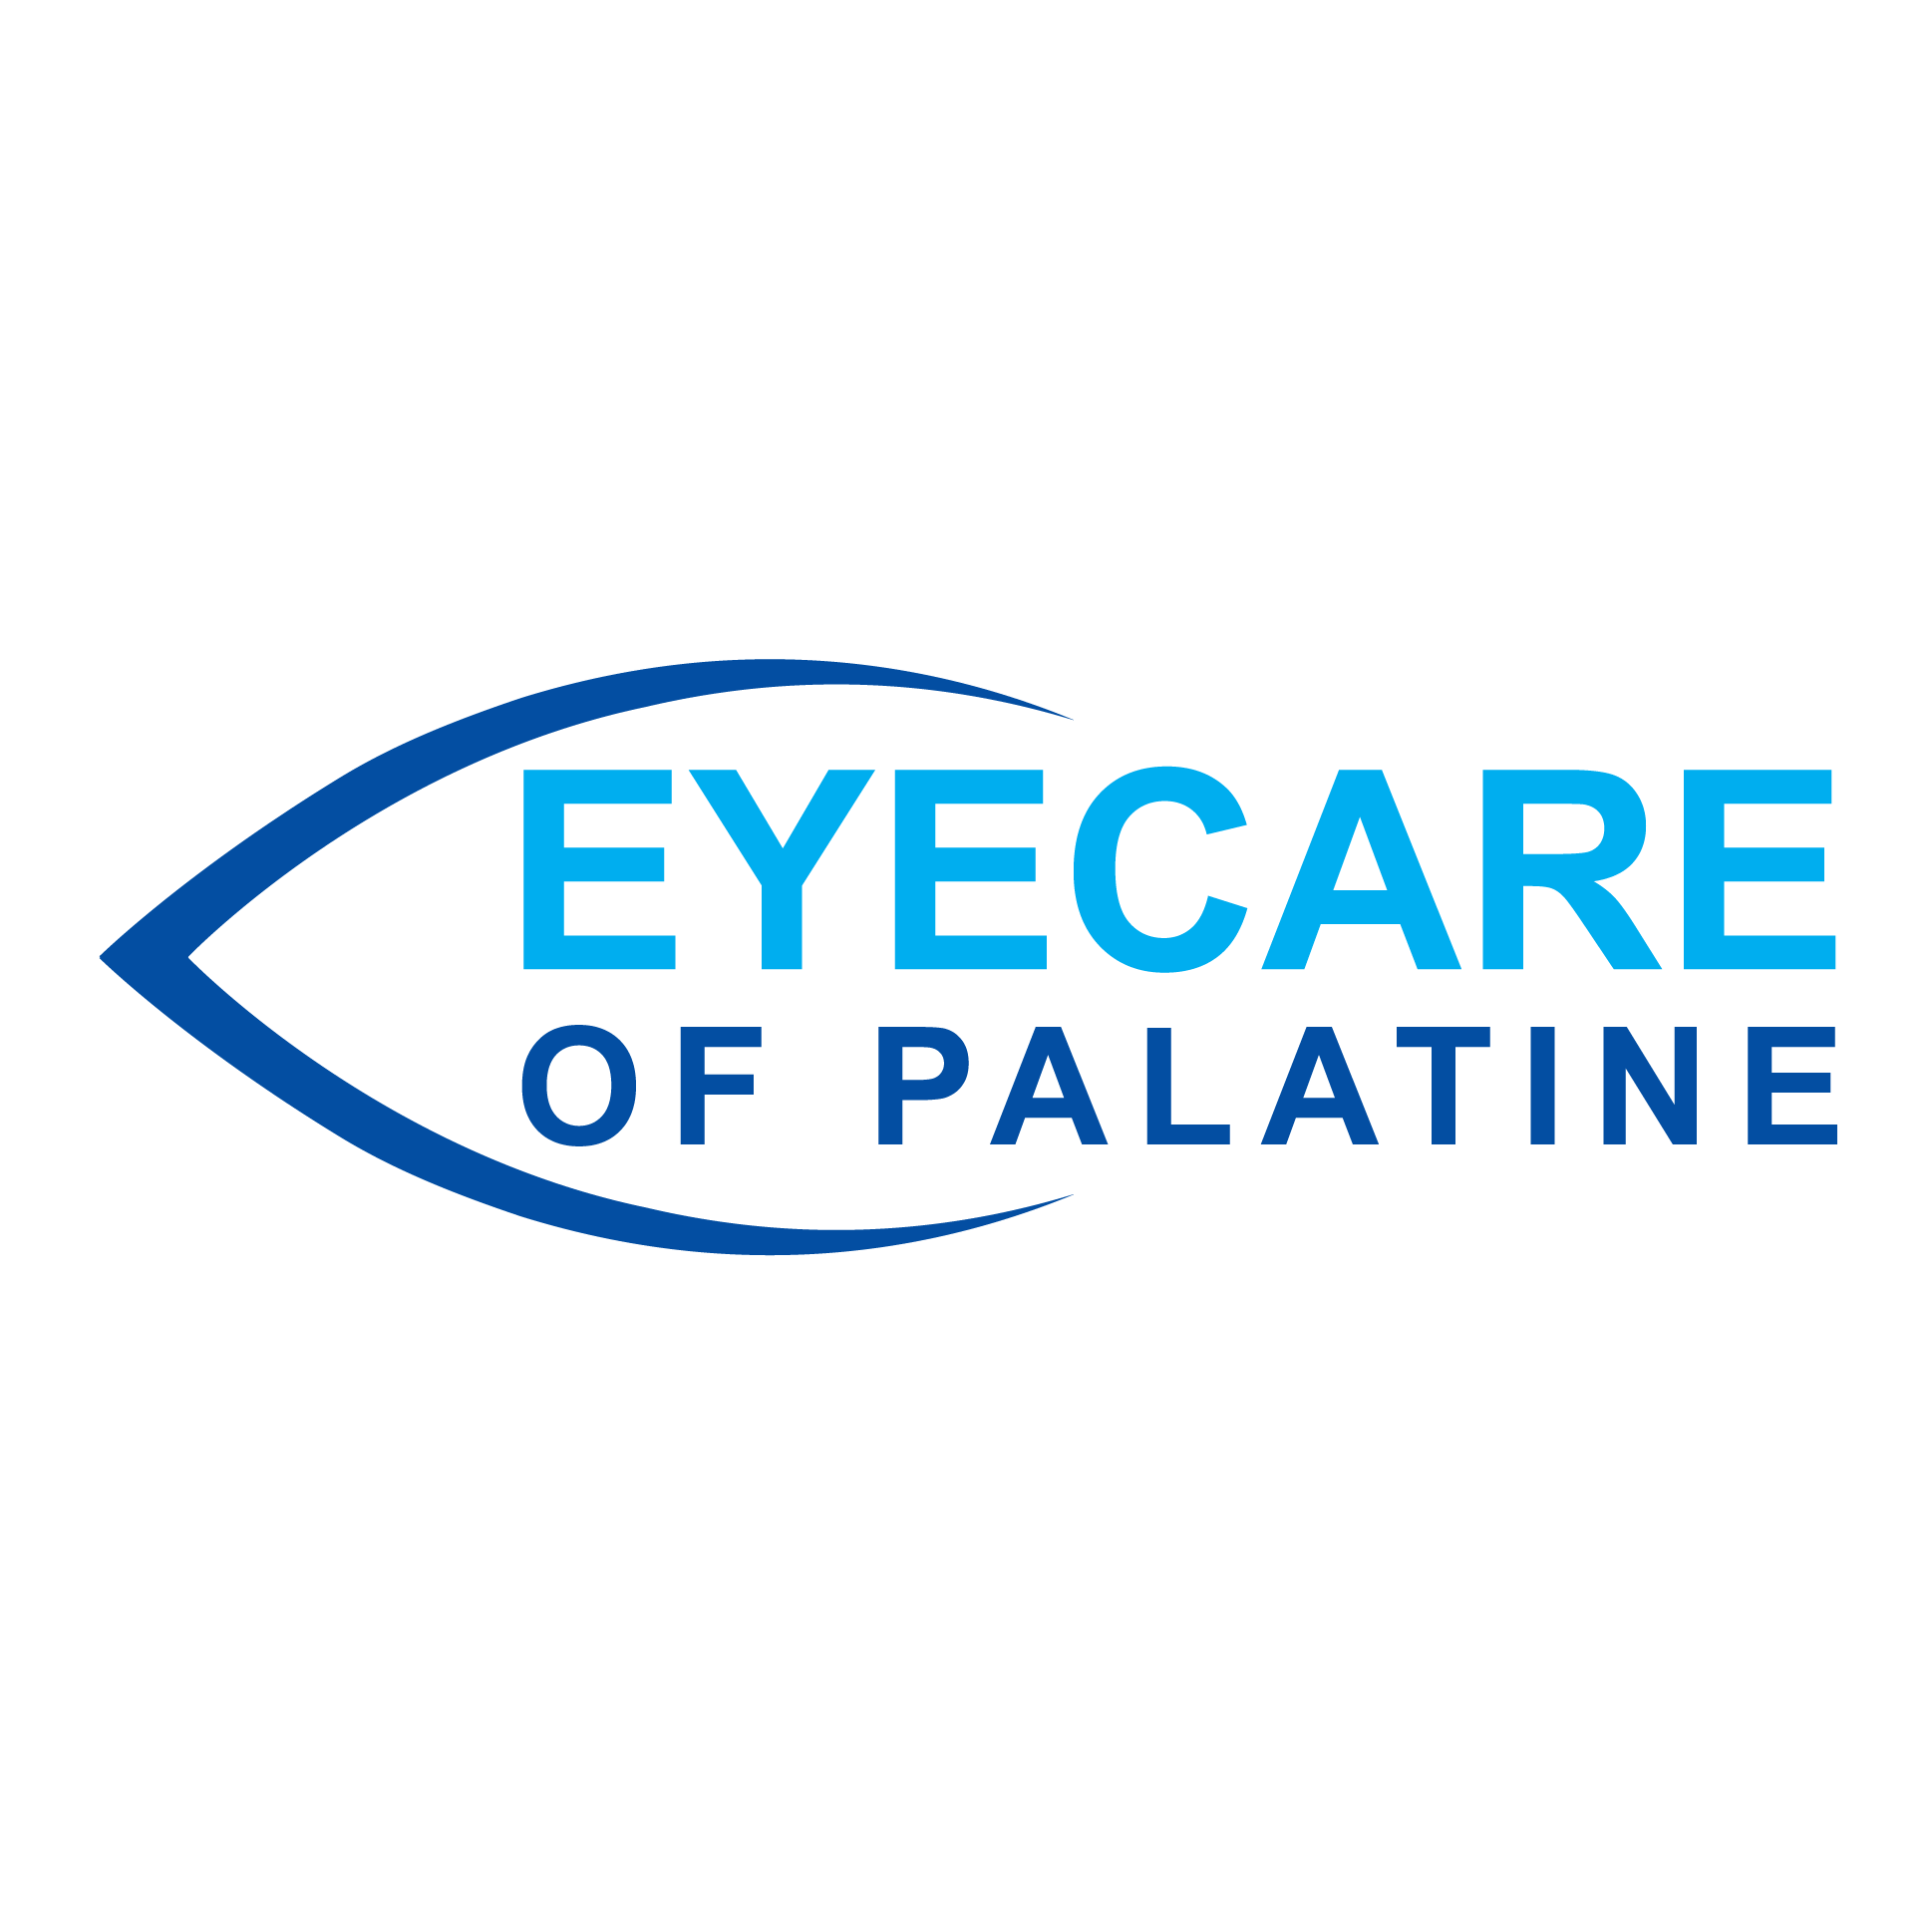 Eyecare of Palatine - Palatine, IL 60067 - (847)705-7777 | ShowMeLocal.com